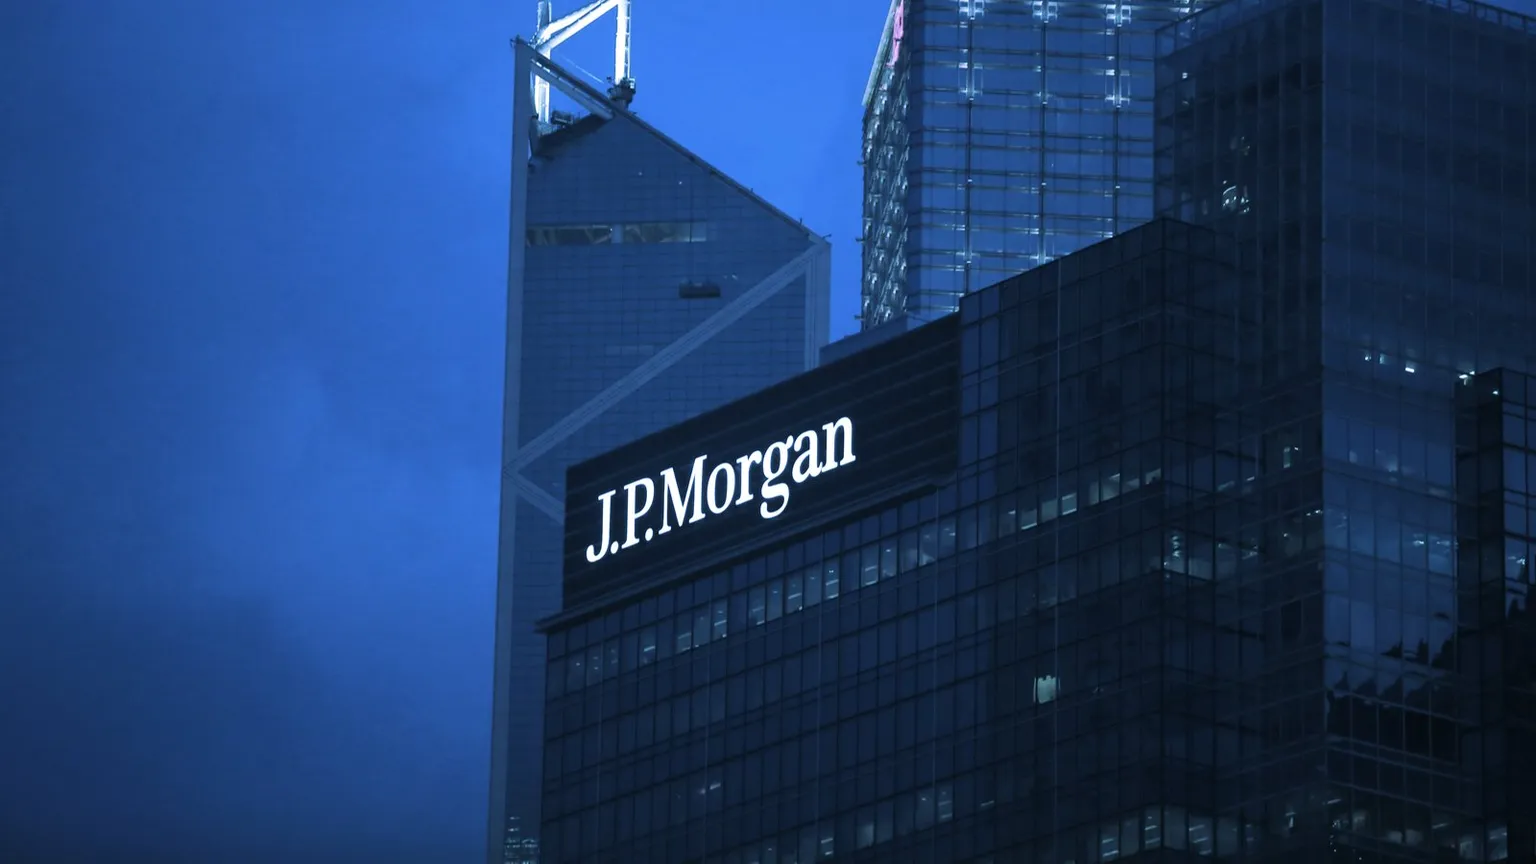 Edificio de JP Morgan en Nueva York. Imagen: Shutterstock